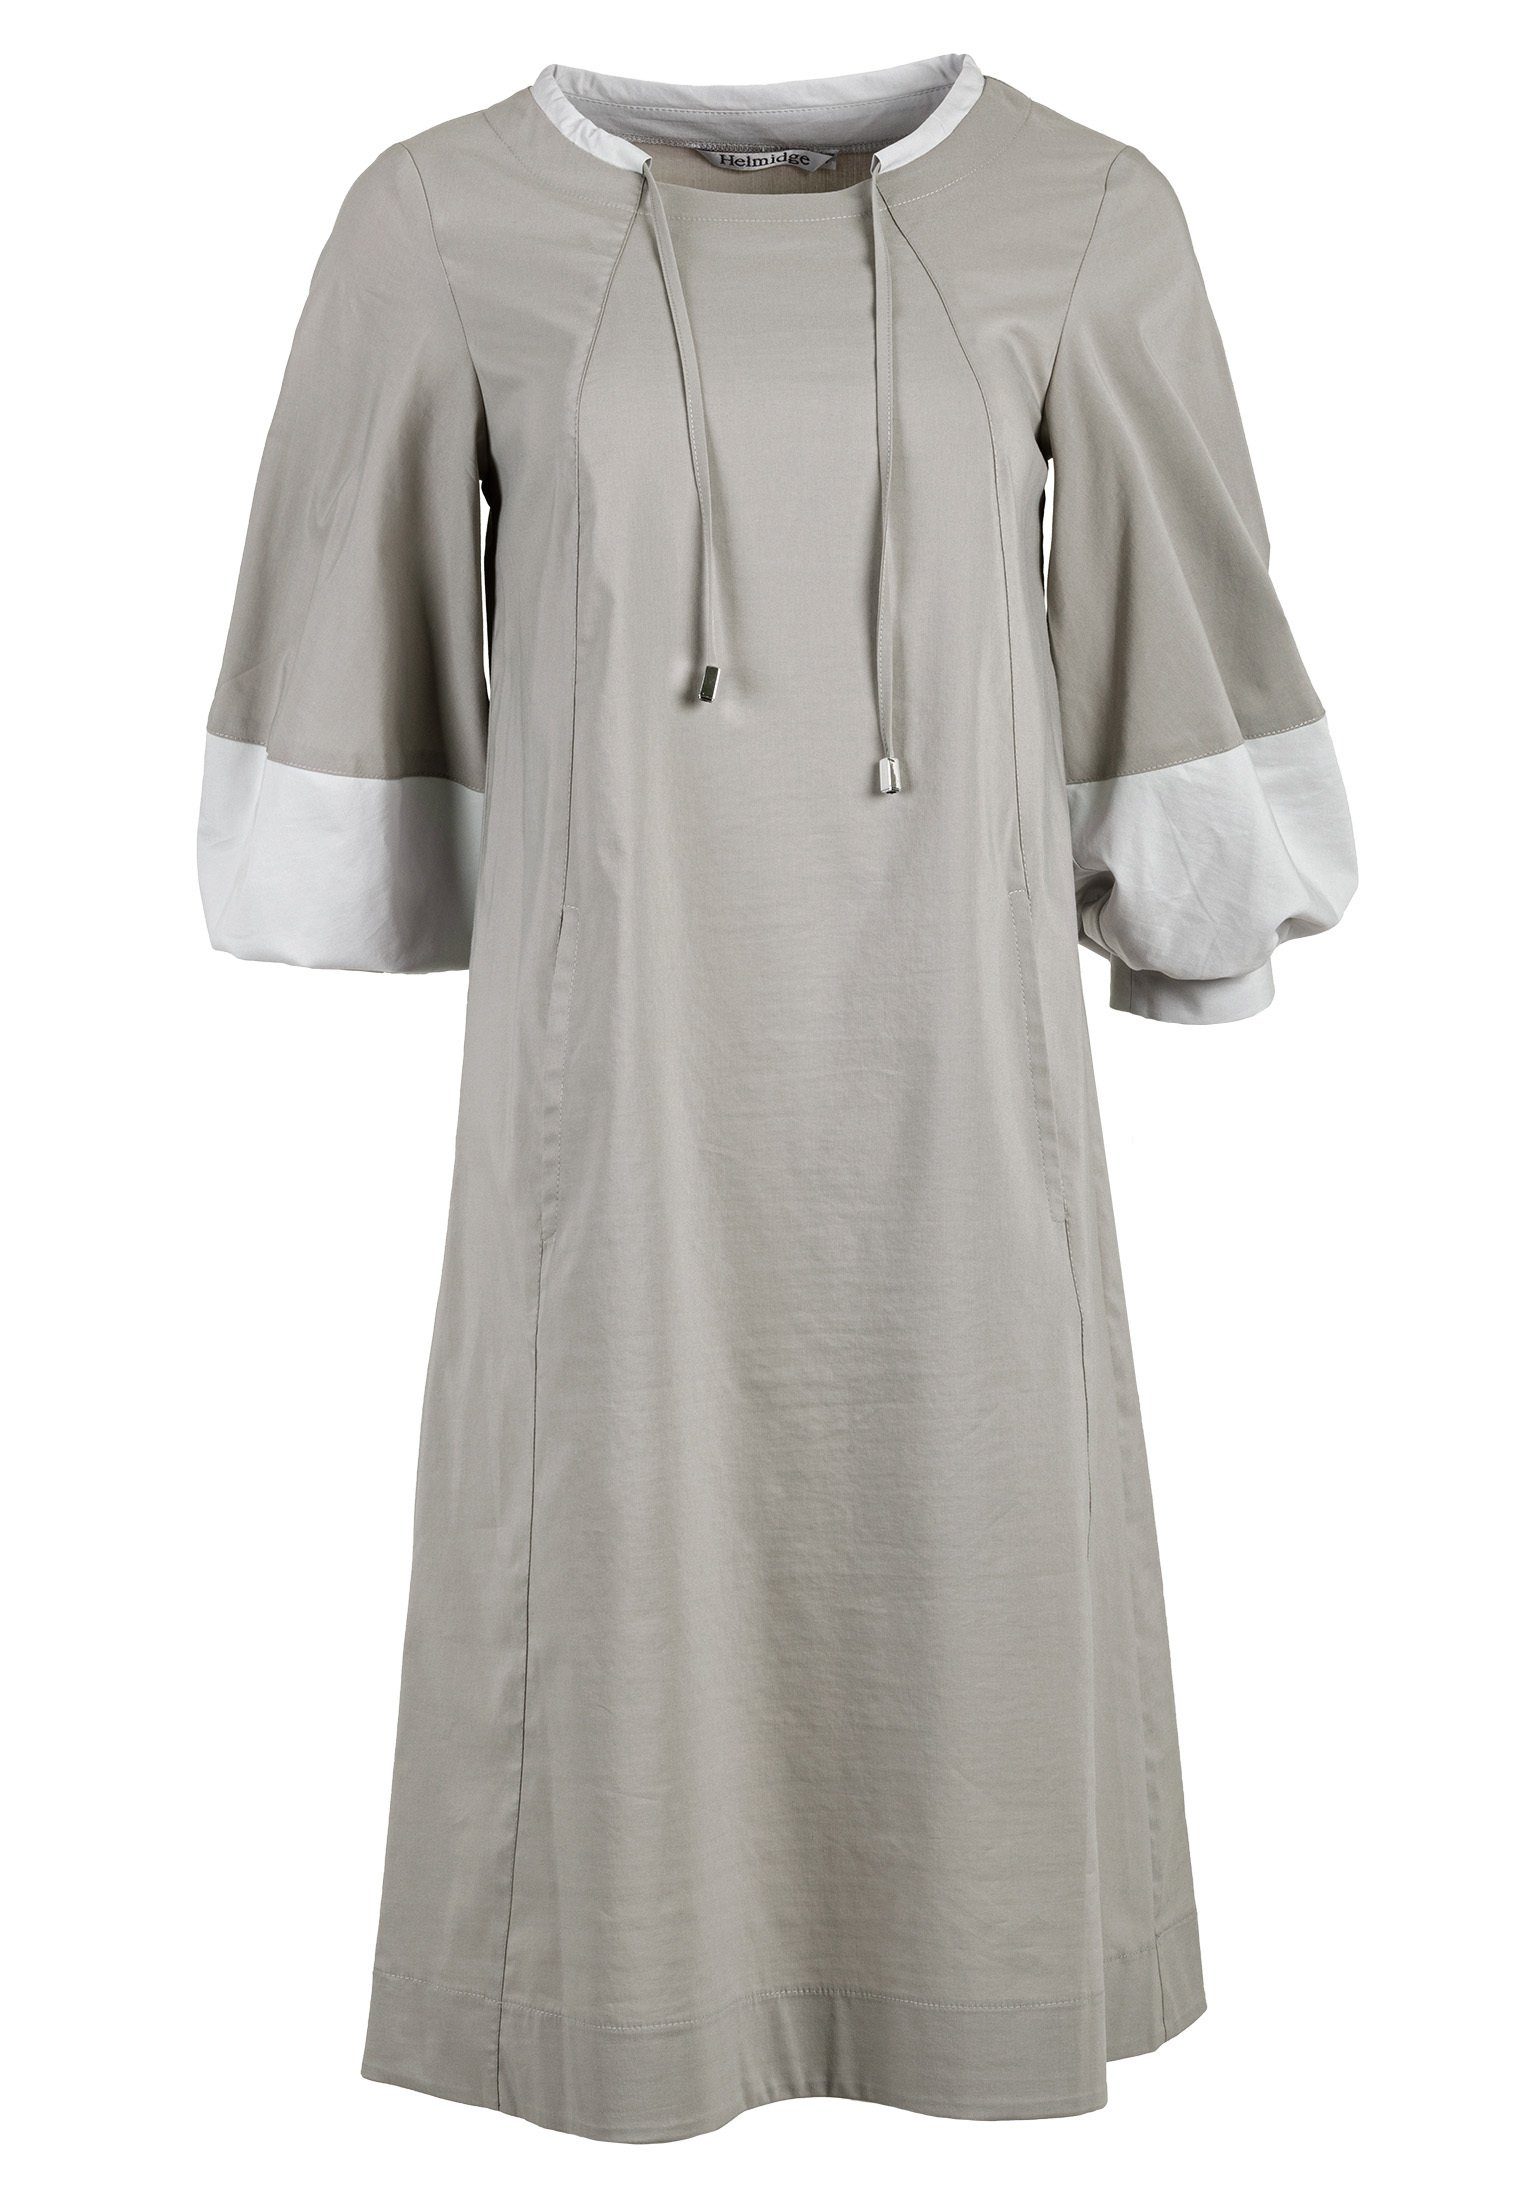 HELMIDGE A-Linien-Kleid Midikleid